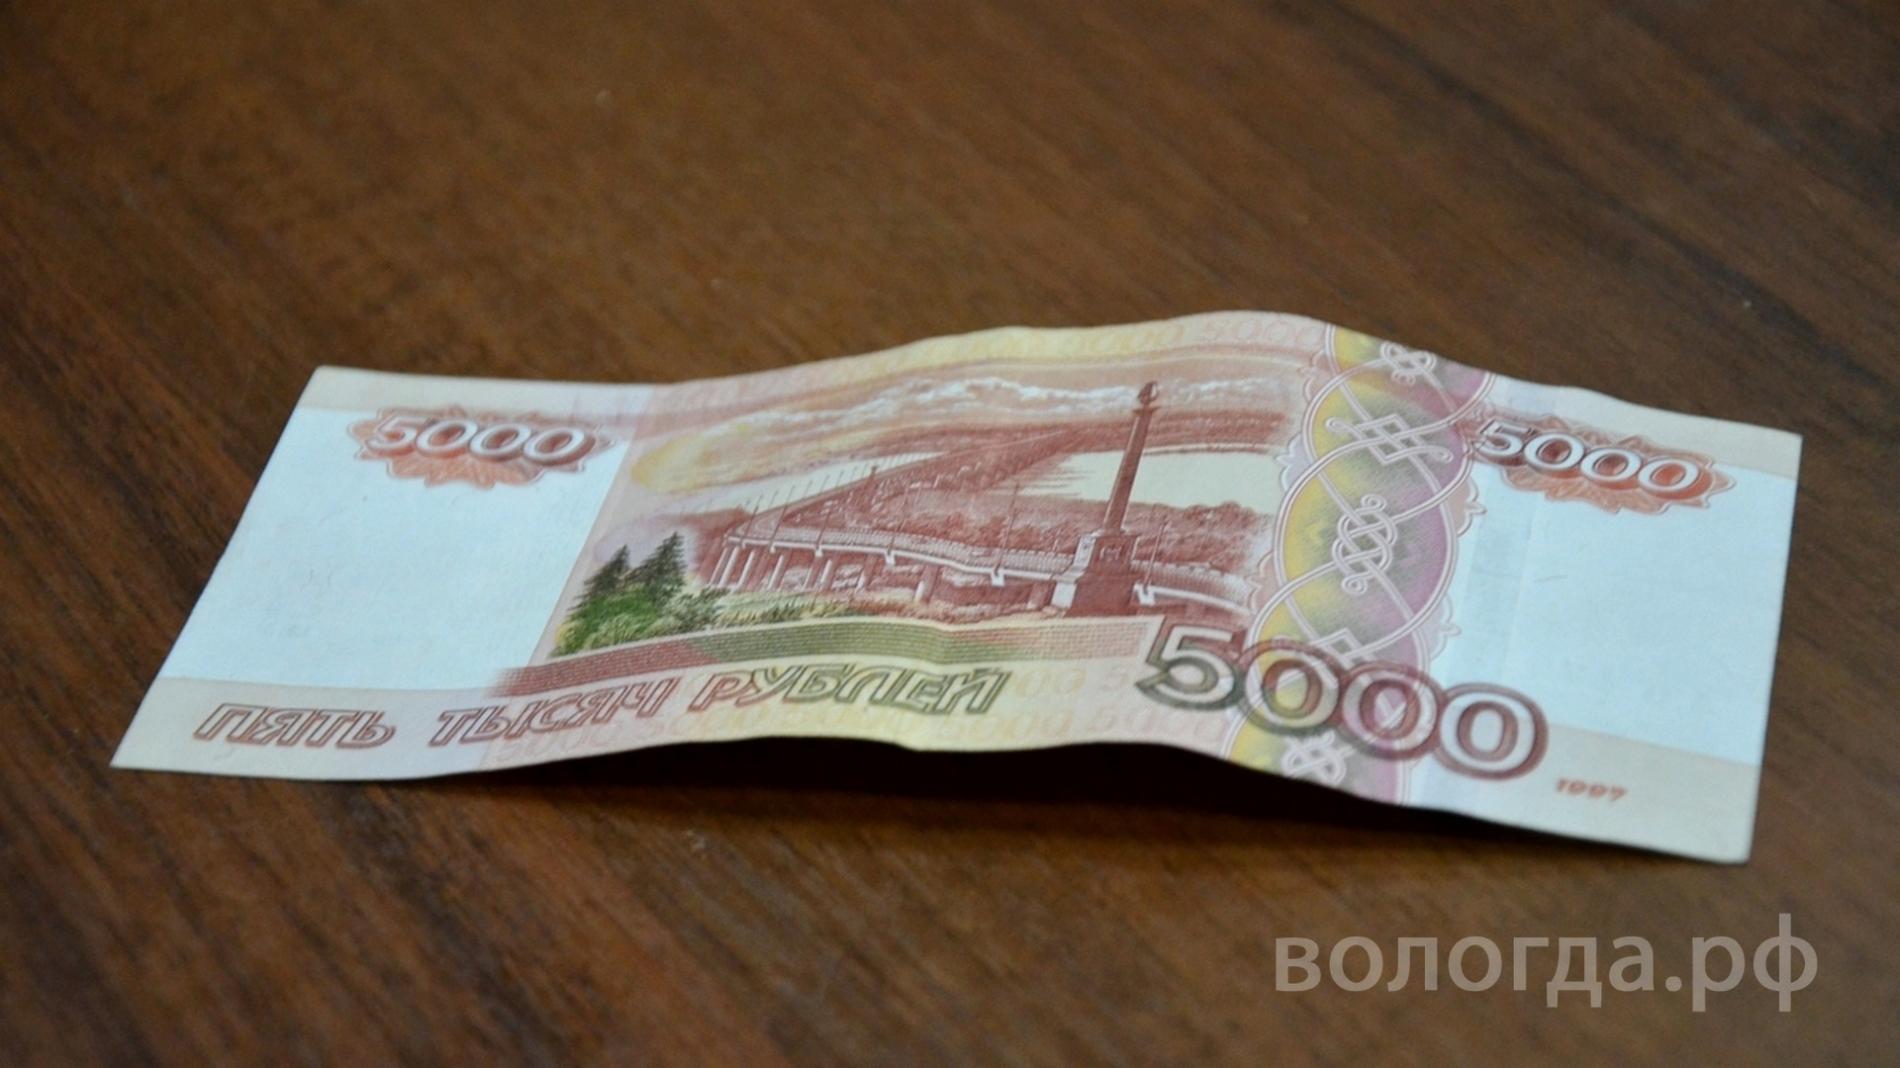 Две фальшивые 5-тысячные банкноты обнаружили в Вологде